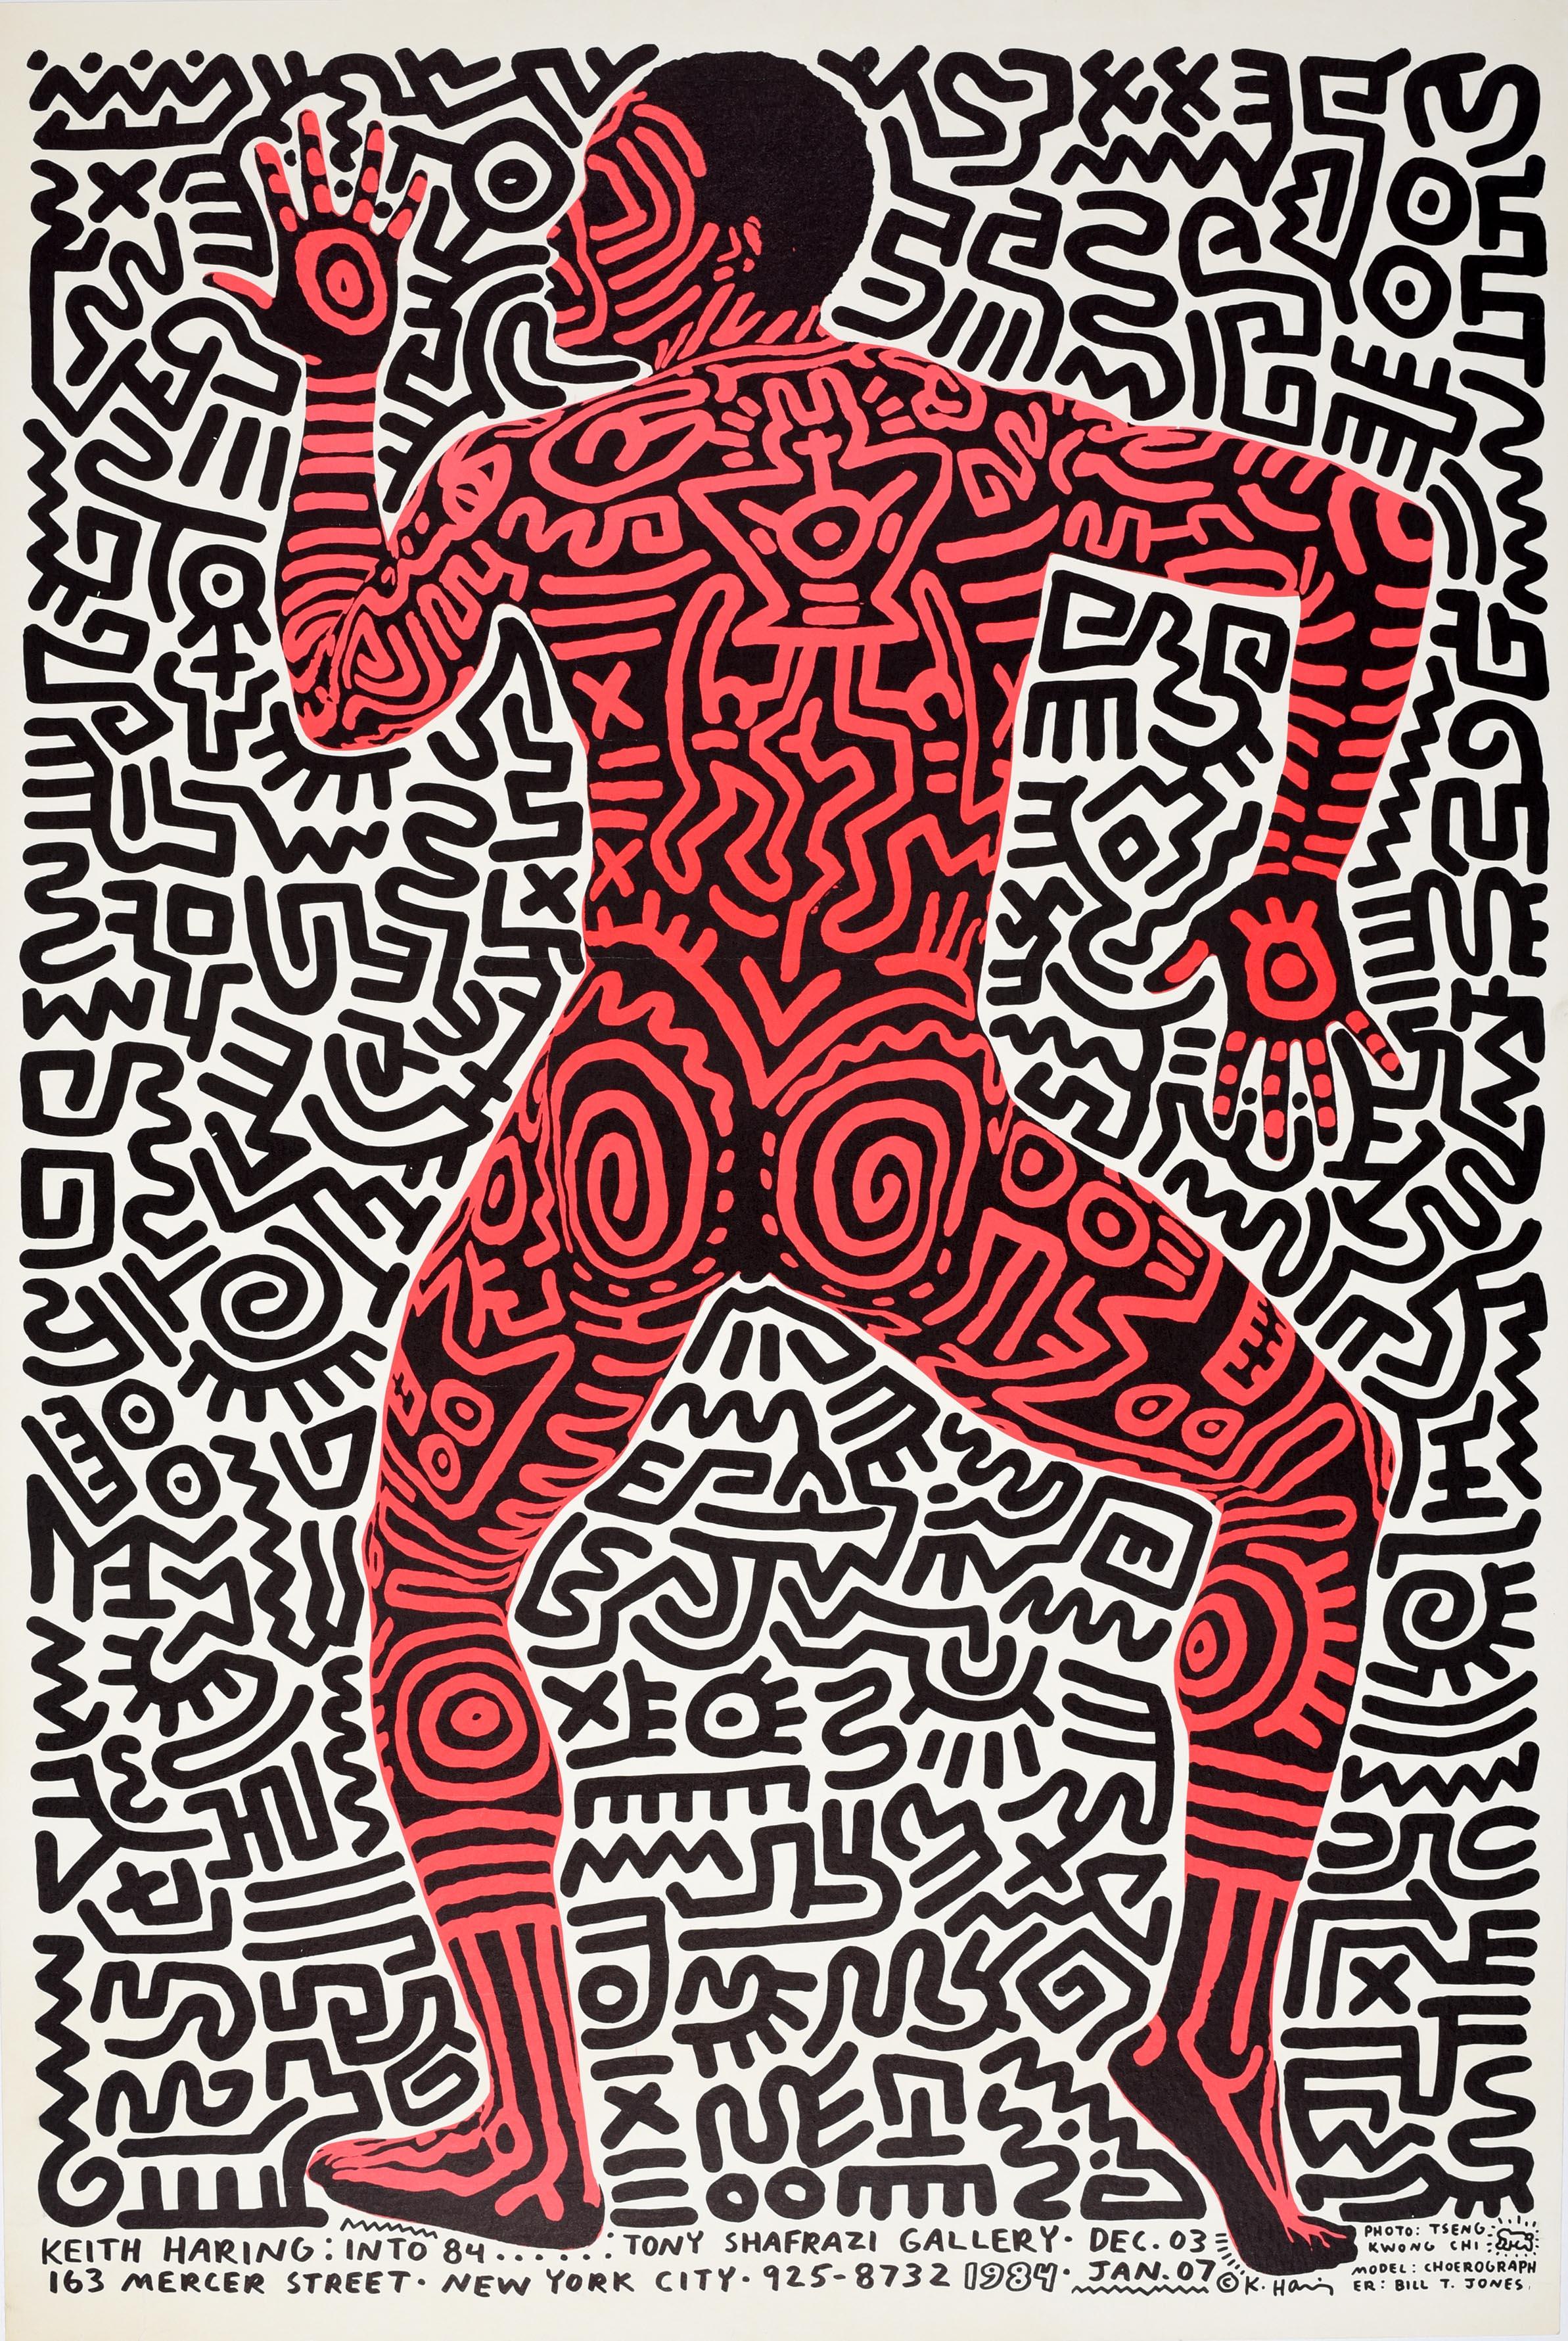 Affiche publicitaire originale d'époque pour une exposition de Keith Haring - Into 84 - tenue à la Tony Shafrazi Gallery à New York du 3 décembre au 7 janvier. Un superbe dessin de l'artiste et activiste social américain Keith Haring (1958-1990)